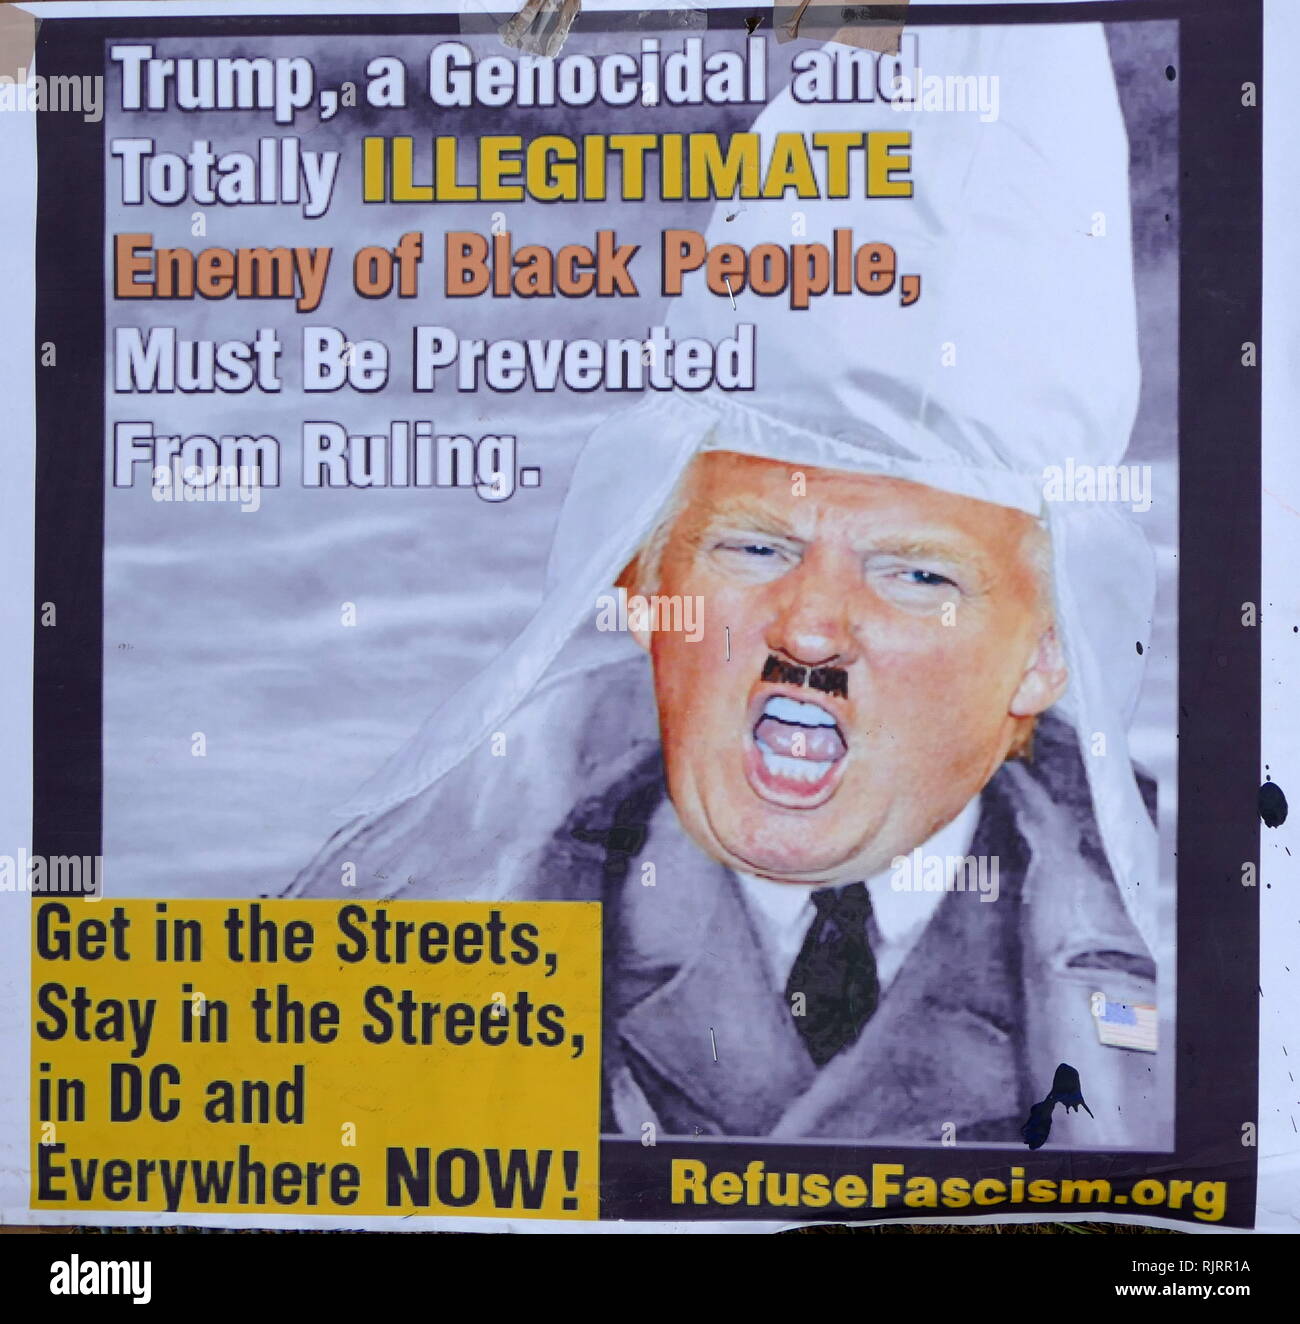 Protest Banner in der Nähe der amerikanische Botschafter in London, für den Besuch im Vereinigten Königreich durch den Präsidenten der Vereinigten Staaten, Donald Trump; Juli 2018. Stockfoto